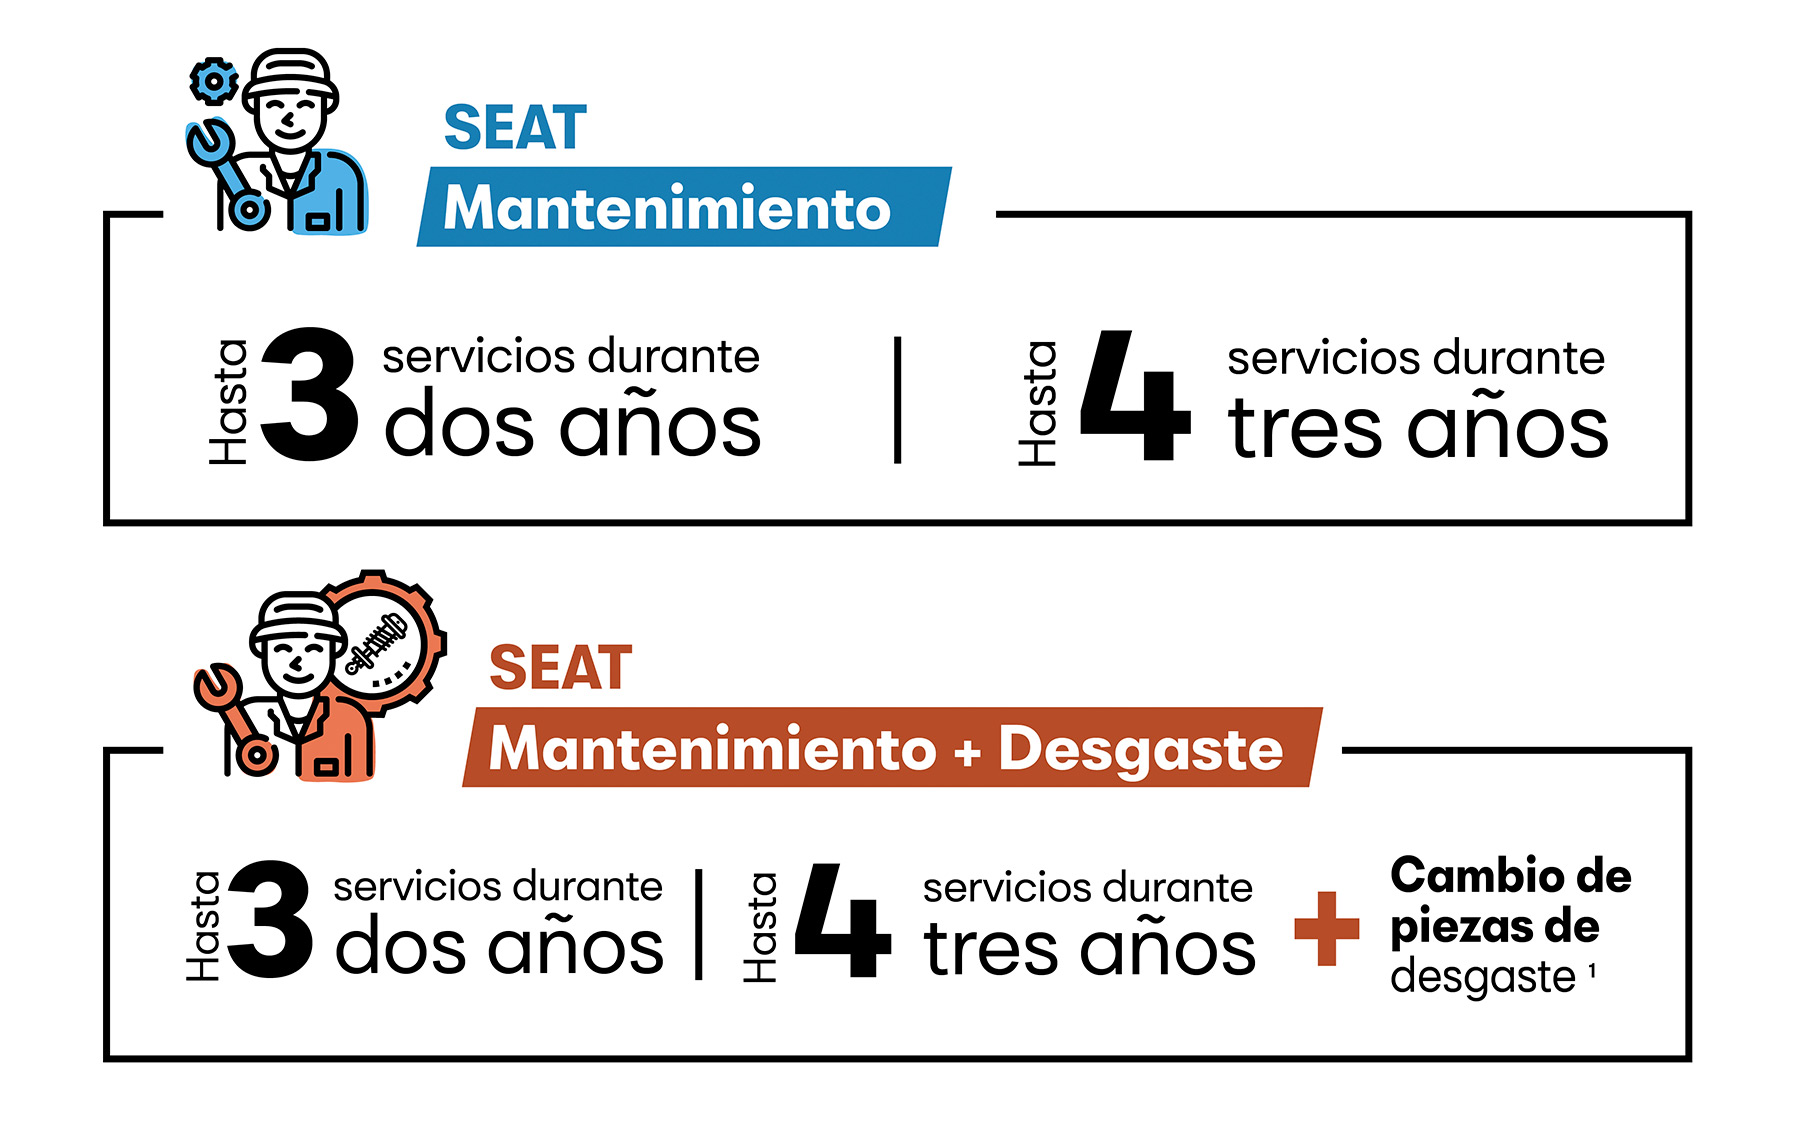 SEAT Care: Servicio & Mantenimiento, te permite adquirir por anticipado los servicios de mantenimientos y el reemplazo de algunas piezas de desgaste.